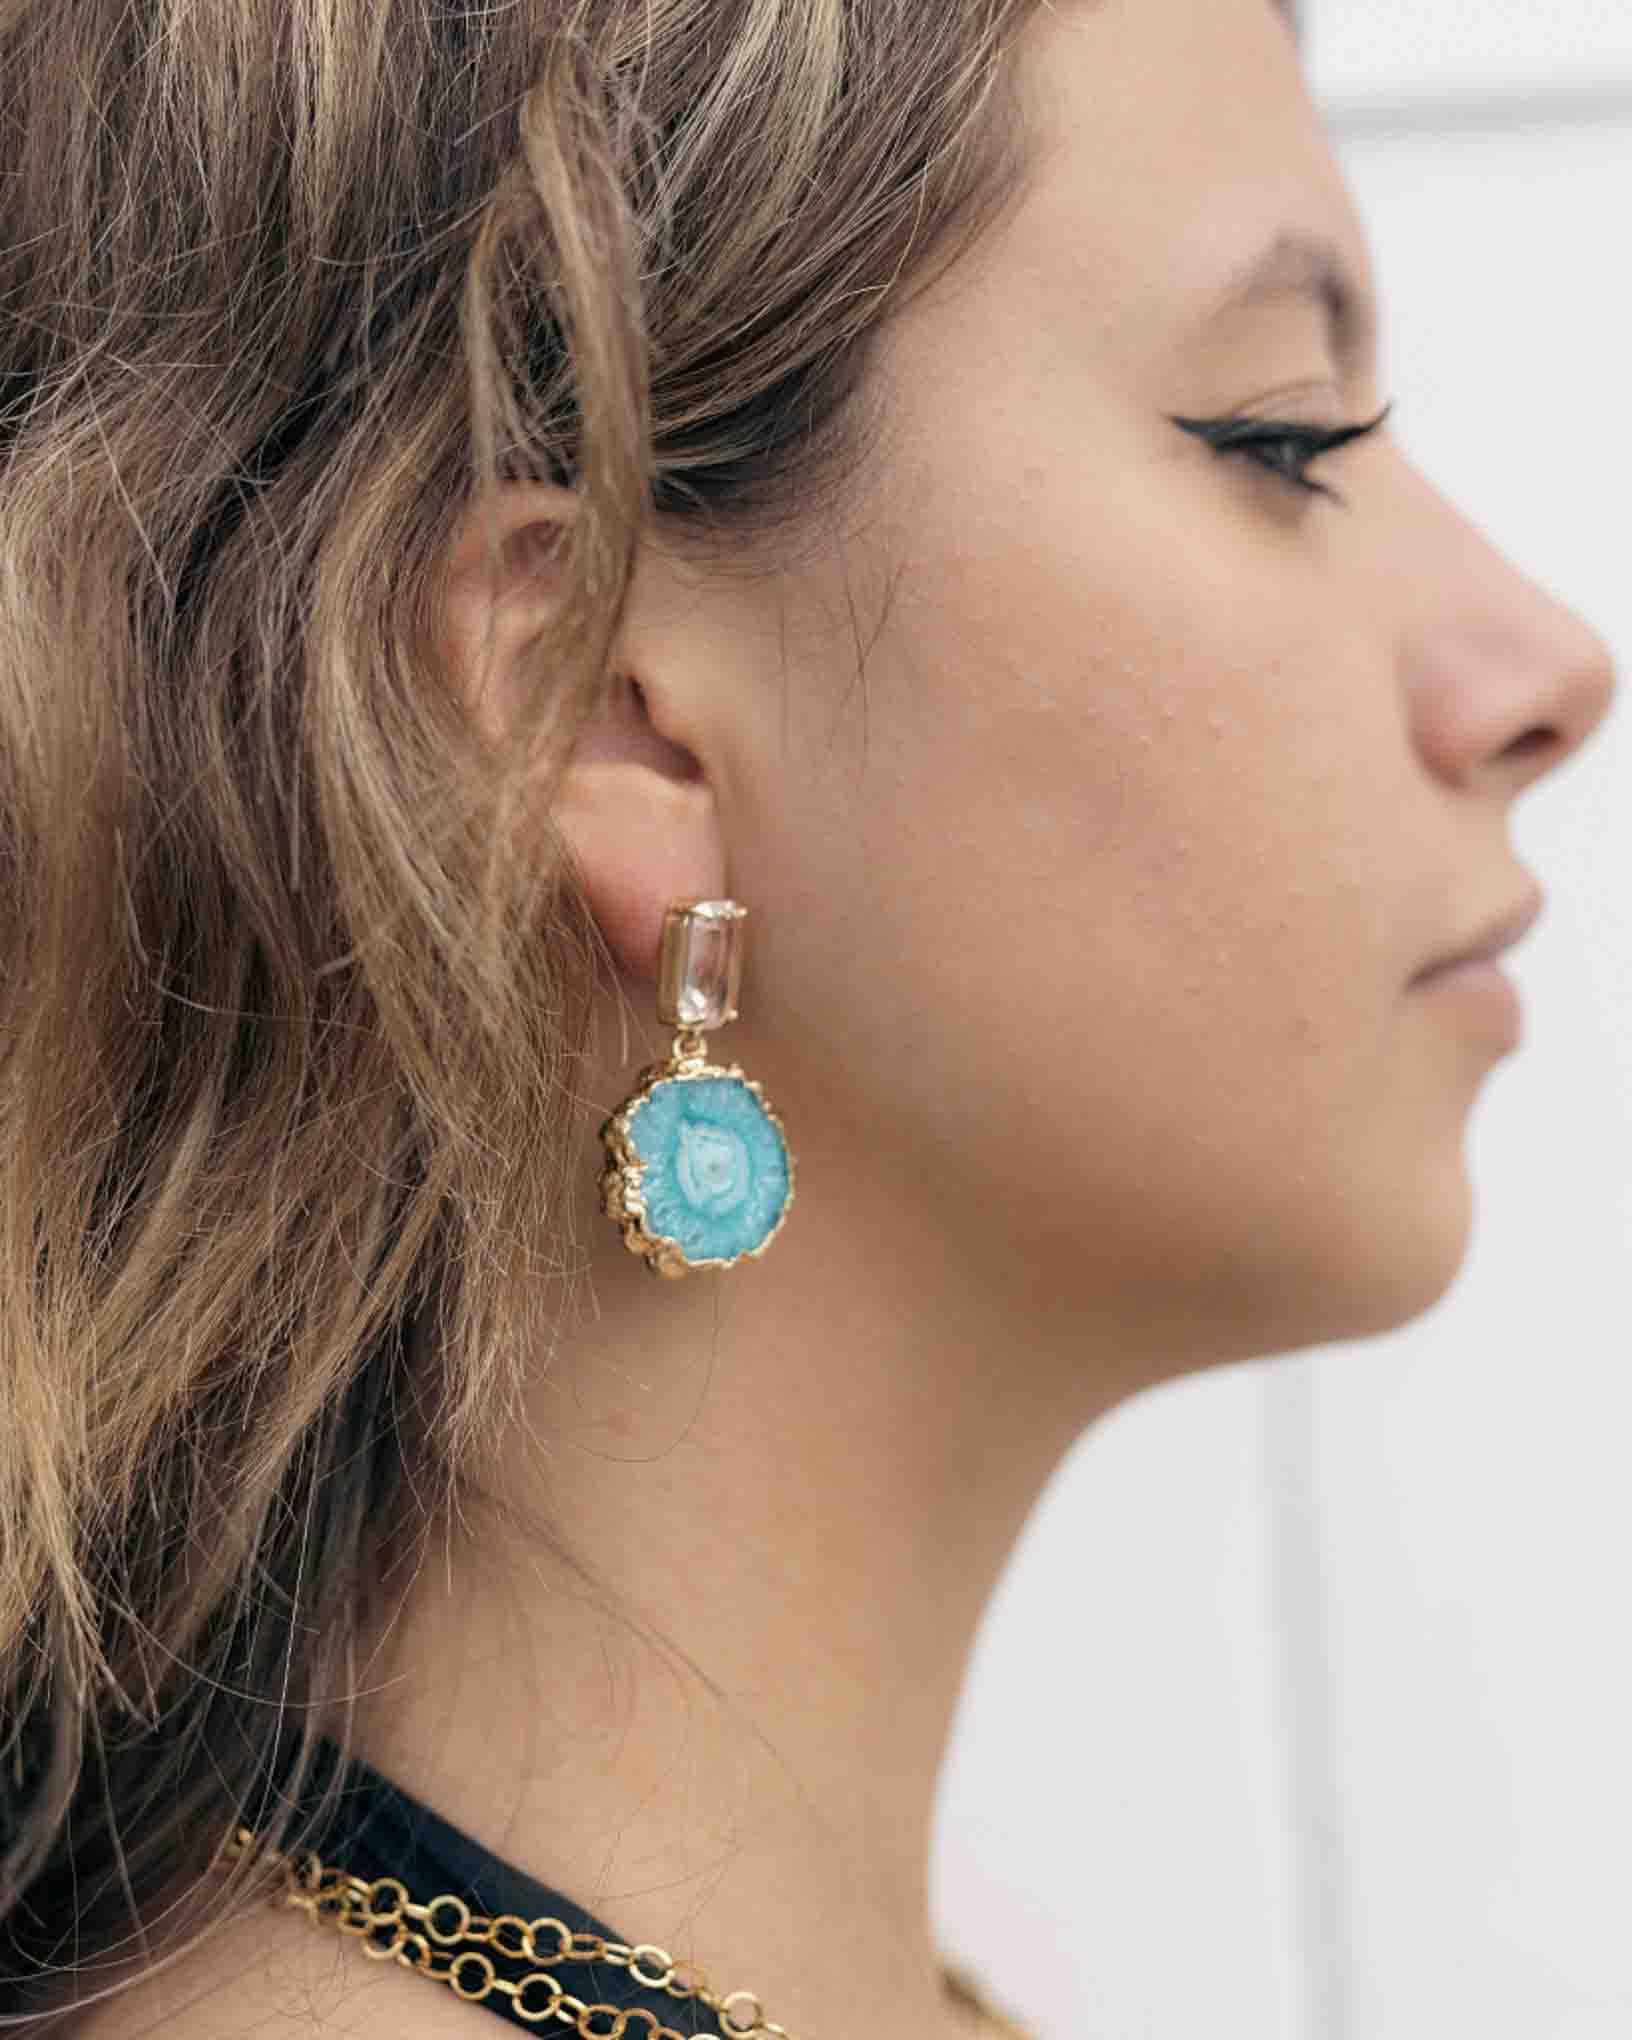 Ohrring Nettuno aus der Kollektion Galassia von Donna Rachele Jewelry